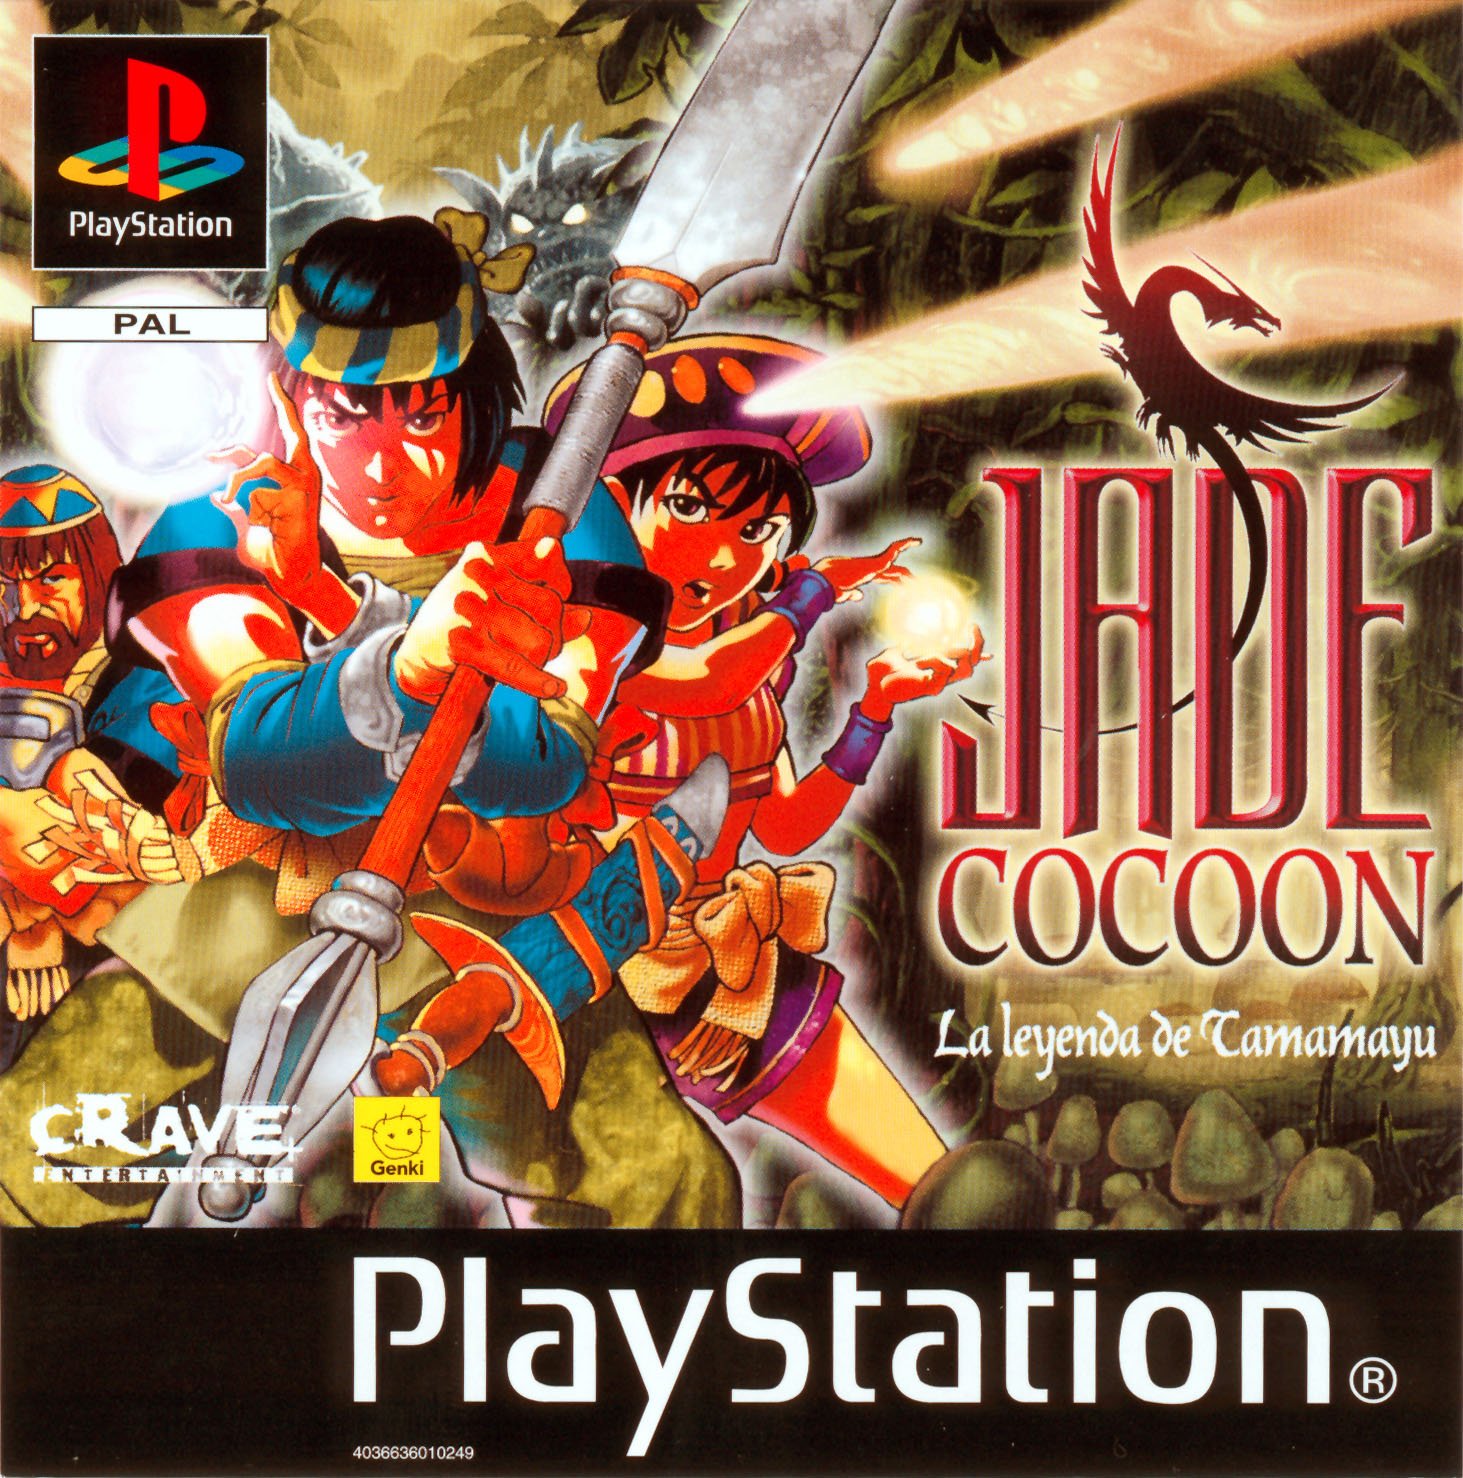 Jade Cocoon: La Leyenda de Tamamayu